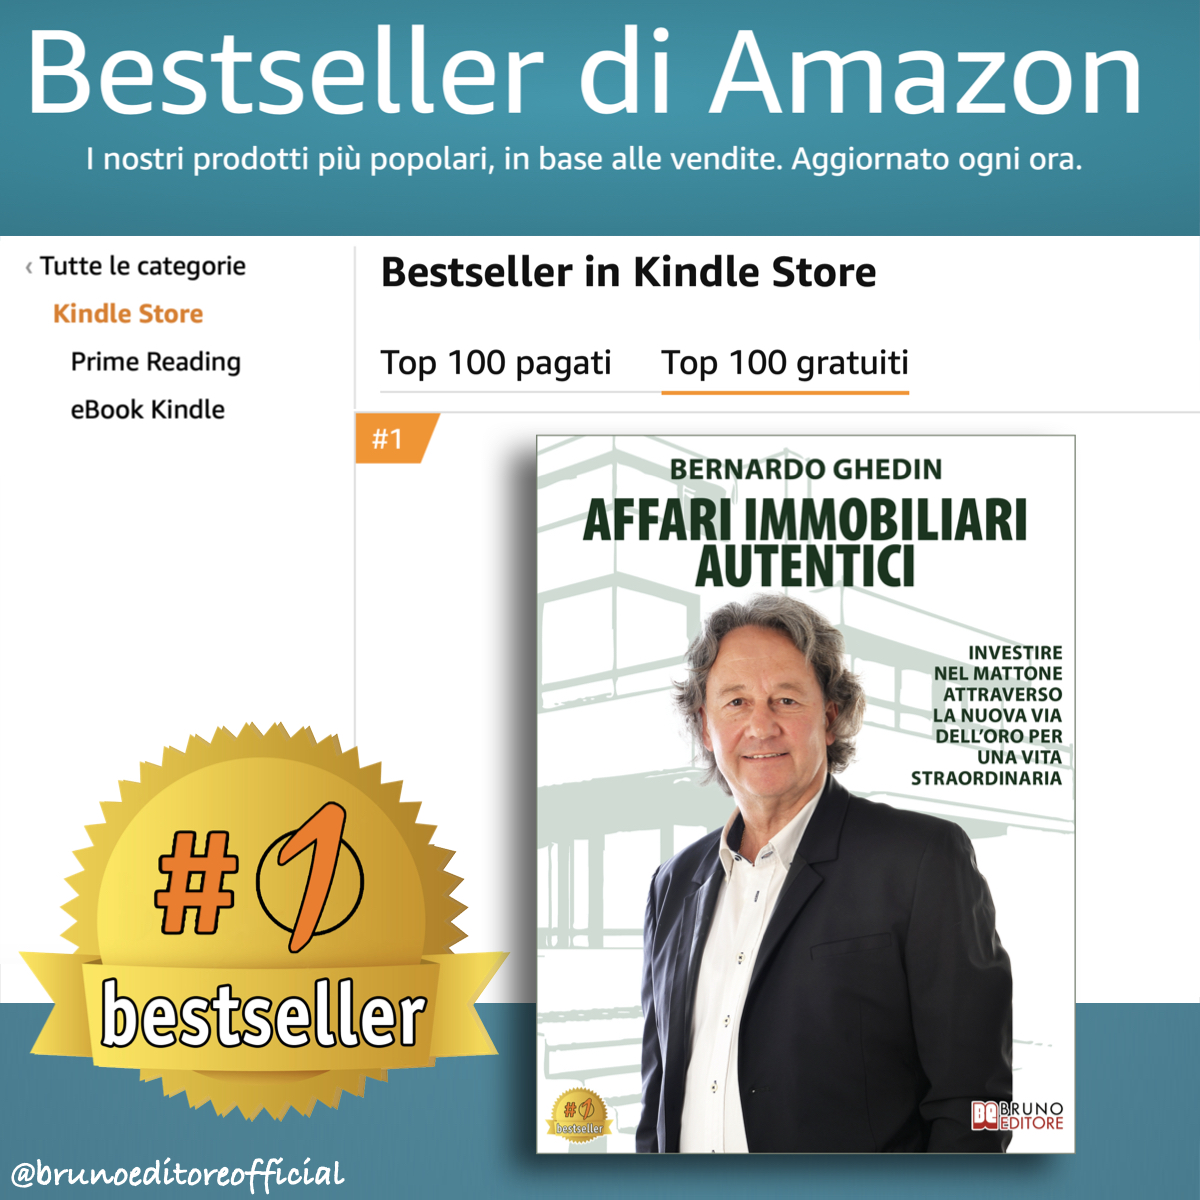 Bernardo Ghedin: Bestseller “Affari Immobiliari Autentici”, il libro su come scovare i grandi affari immobiliari grazie alla tecnologia